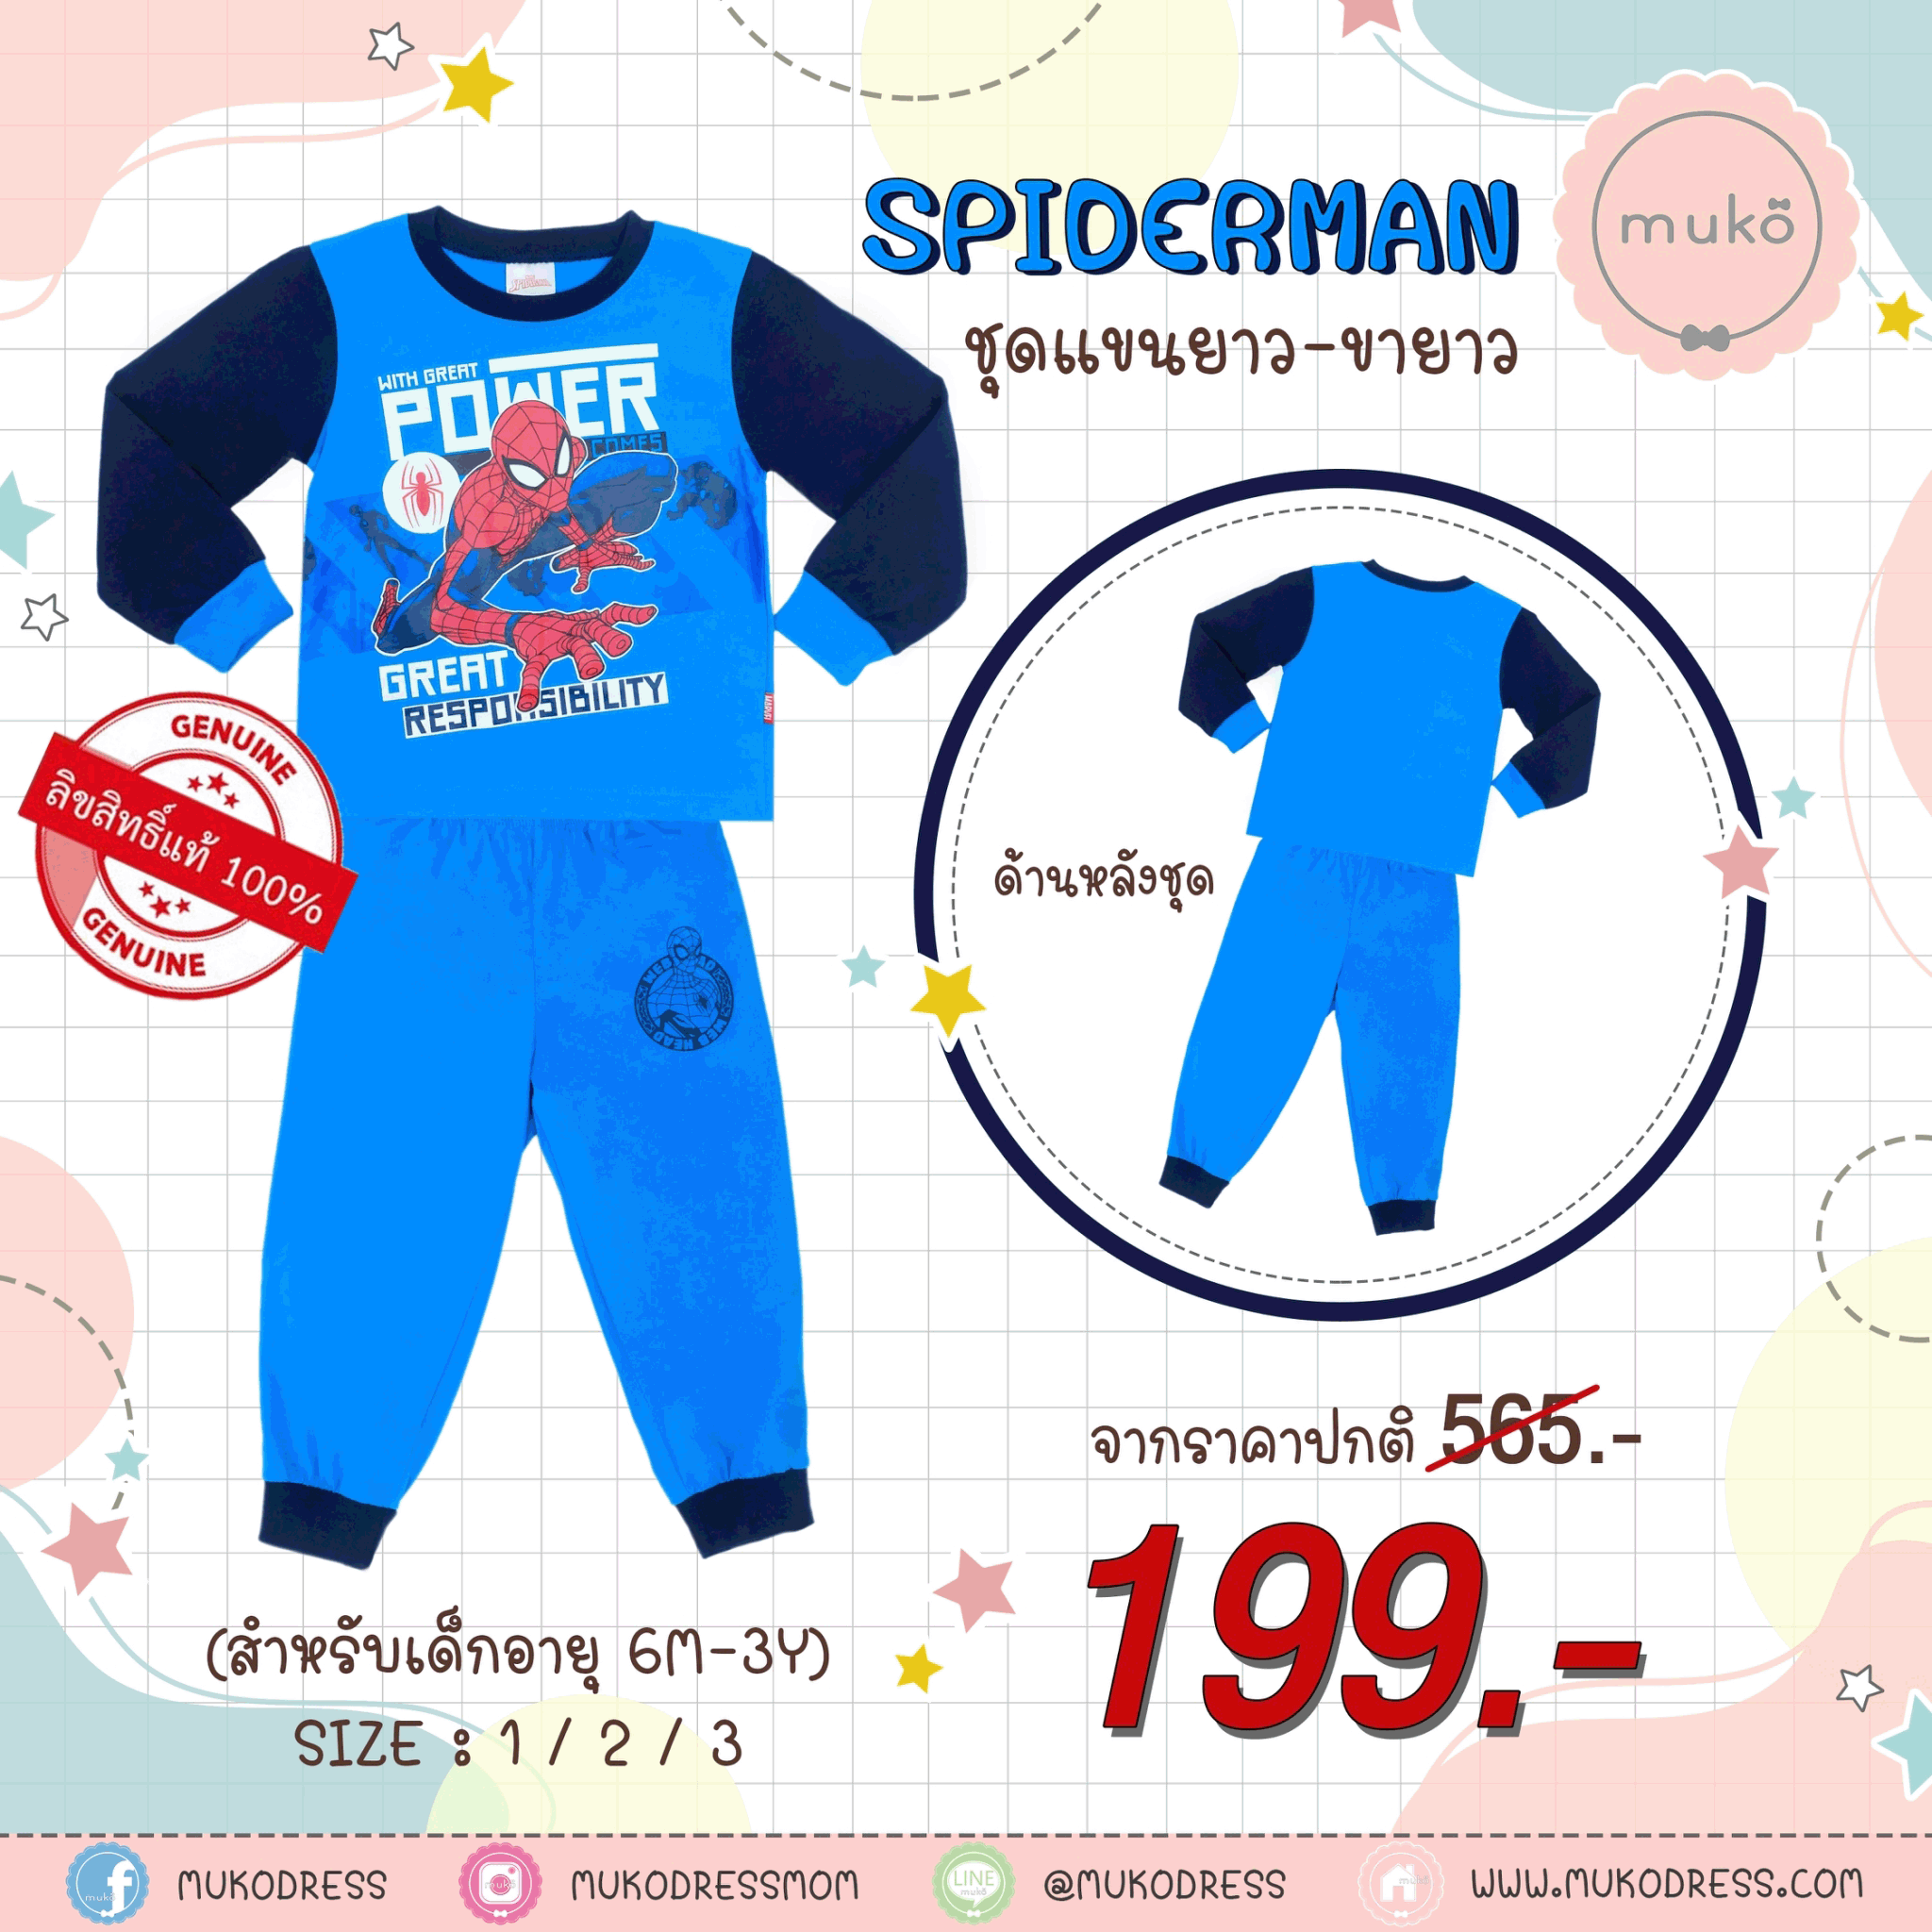 ชุดเด็ก 2-3 ขวบ แขนยาว-ขายาว (Size 3) DMS127-04-3-Blue 3 ลาย สไปร์เดอร์แมน Spiderman สีฟ้า